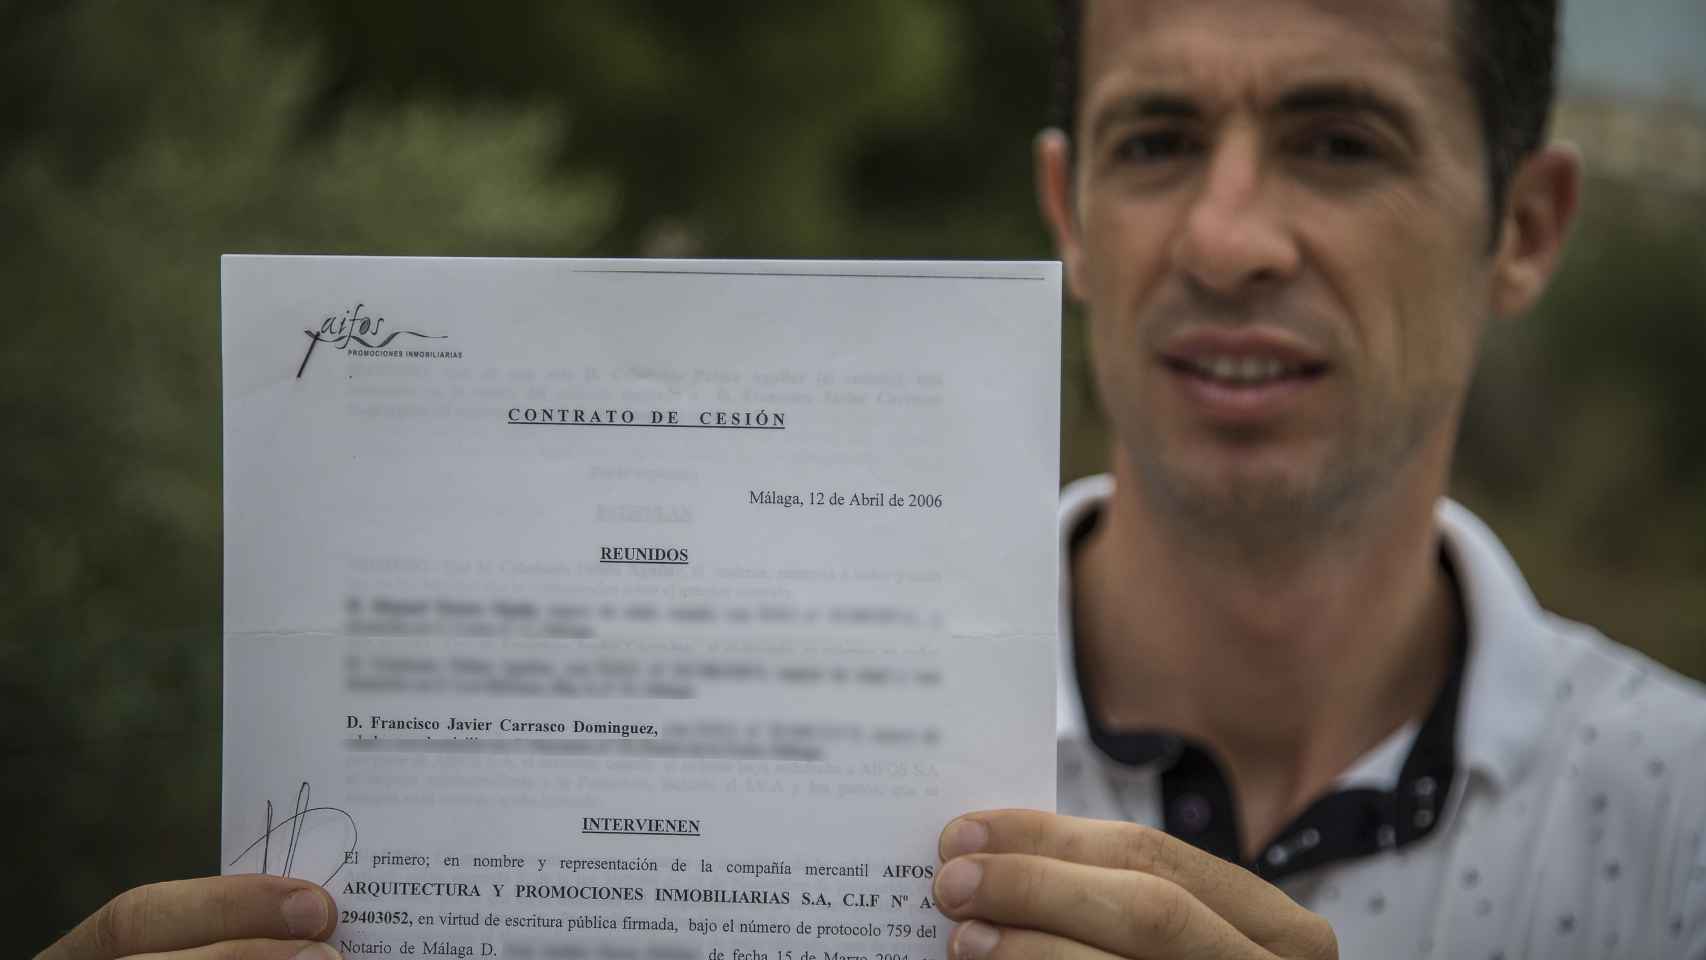 Francisco Javier Carrasco, bombero de profesión, llegó a entregar a Aifos 80.000 euros como entrada. Nunca recibió la casa. Ahora su banco ha sido obligado a devolverle el dinero.